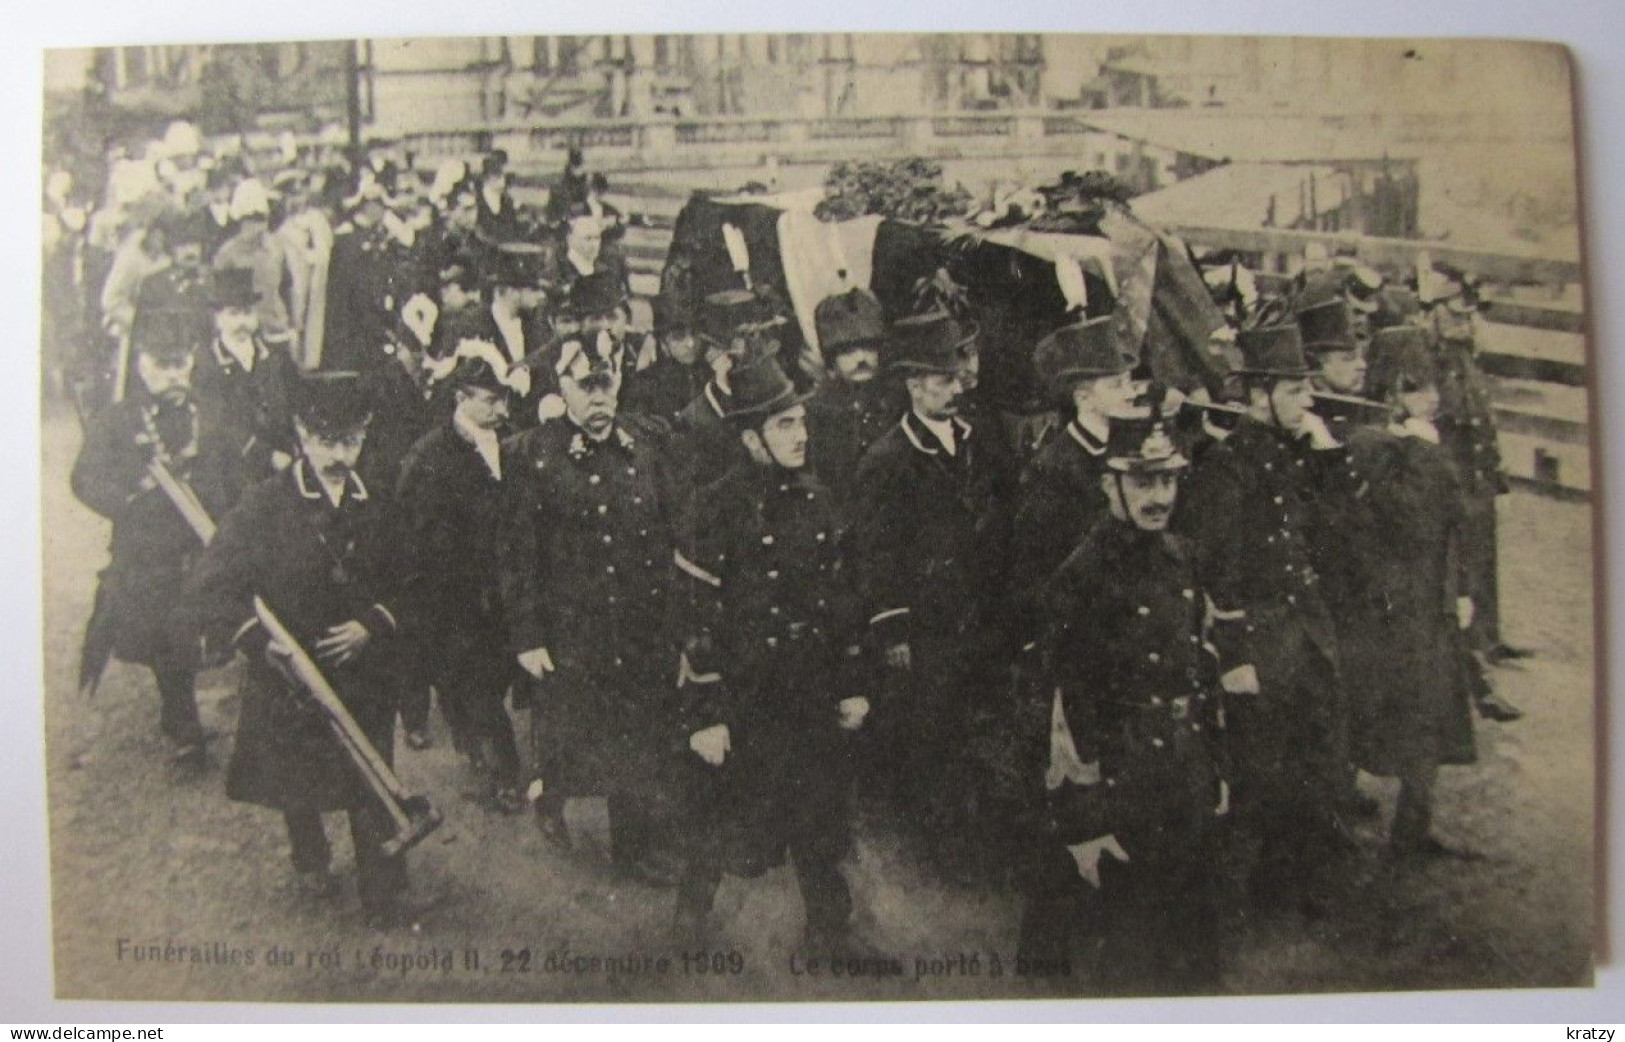 BELGIQUE - BRUXELLES - LAEKEN - Funérailles Du Leopold II - Le Corps Porté à Bras - Fêtes, événements